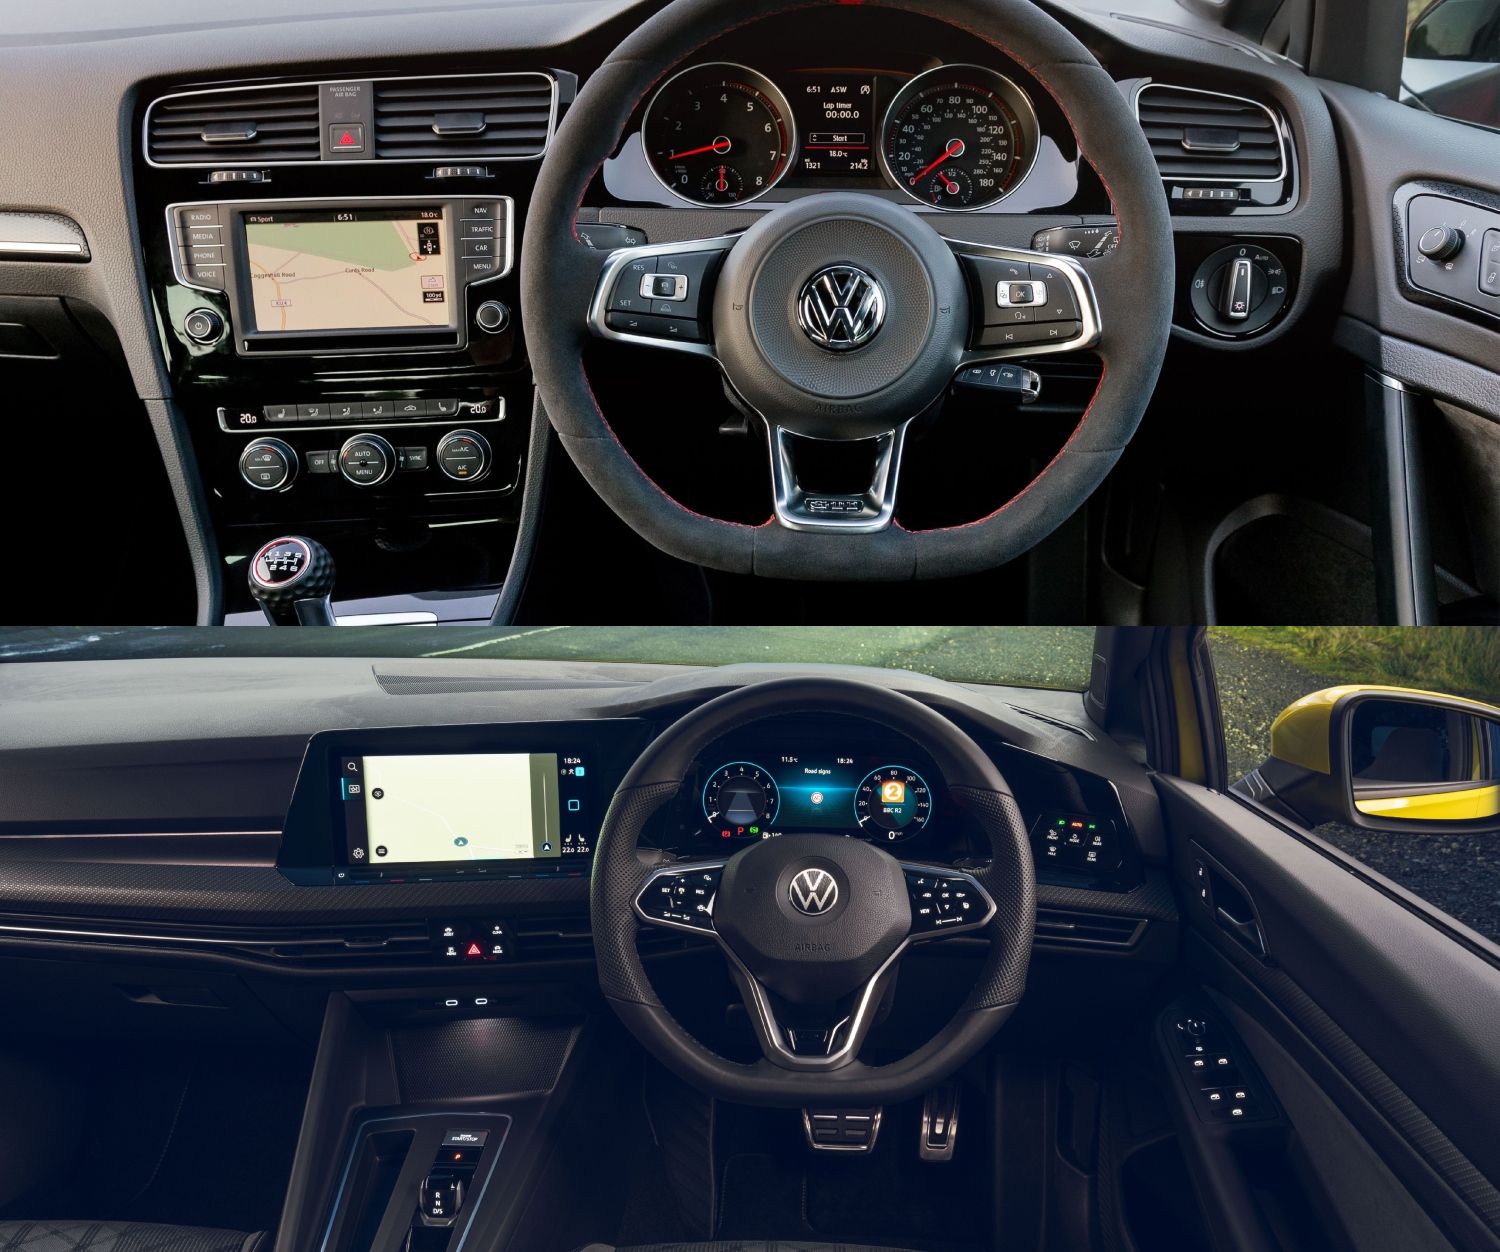 Volkswagen MK 7 and MK 8 Golf interior